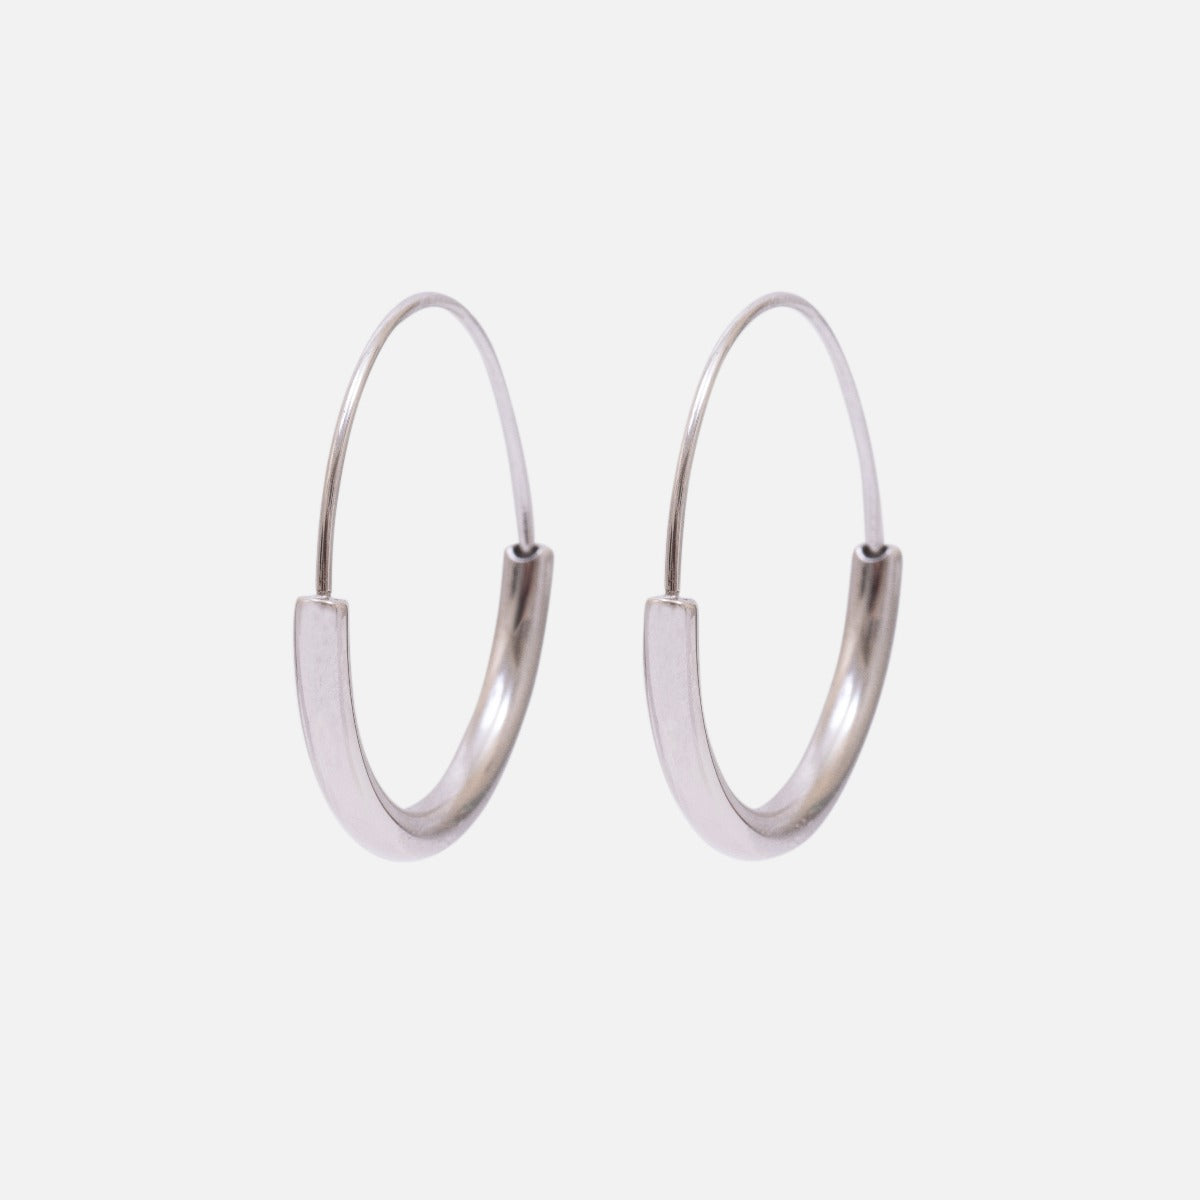 Silver stainless steel hoop earrings with wide half circle